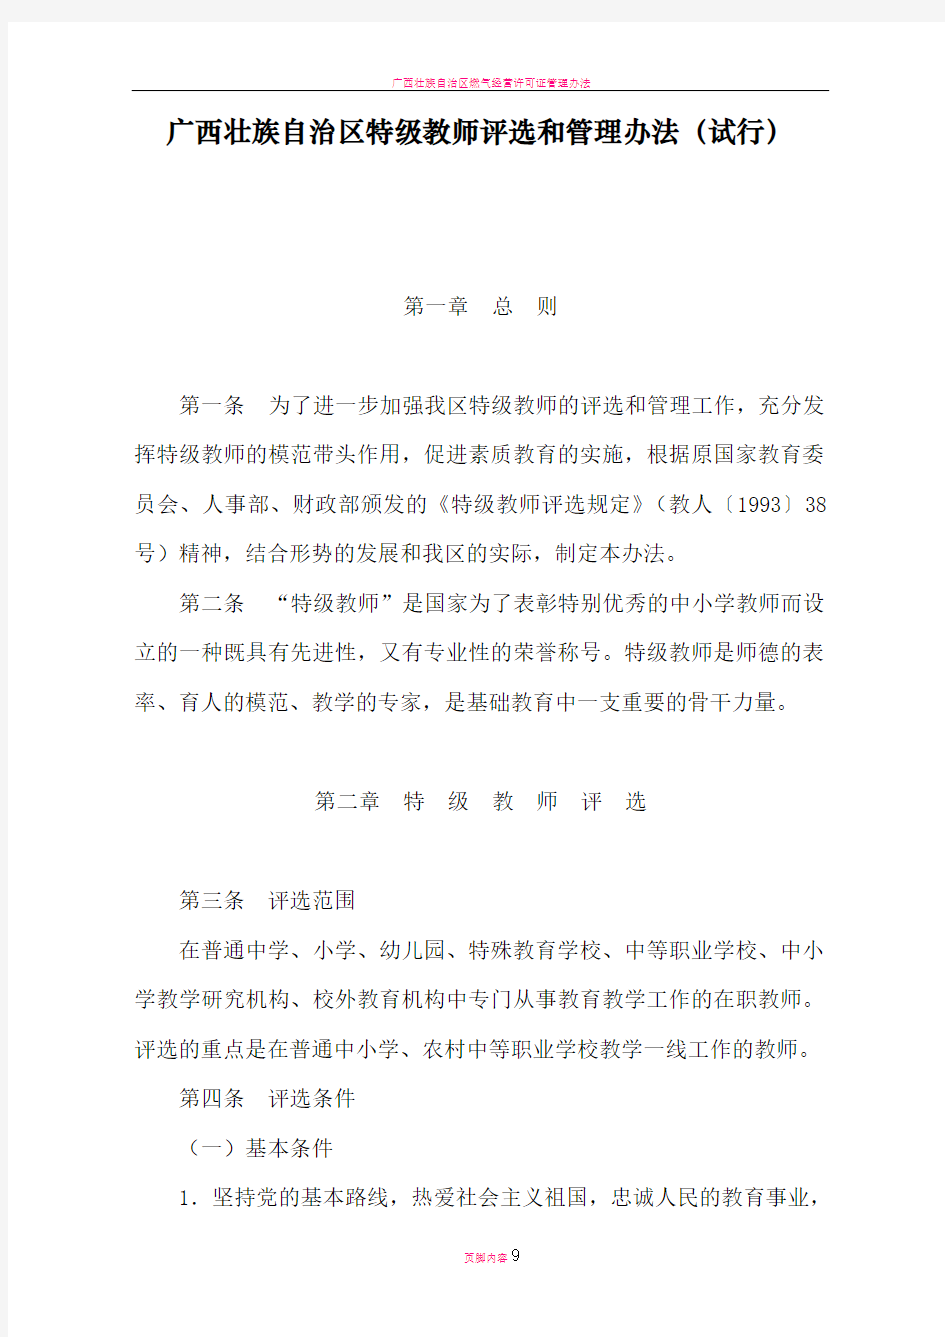 广西壮族自治区特级教师评选和管理办法(试行)